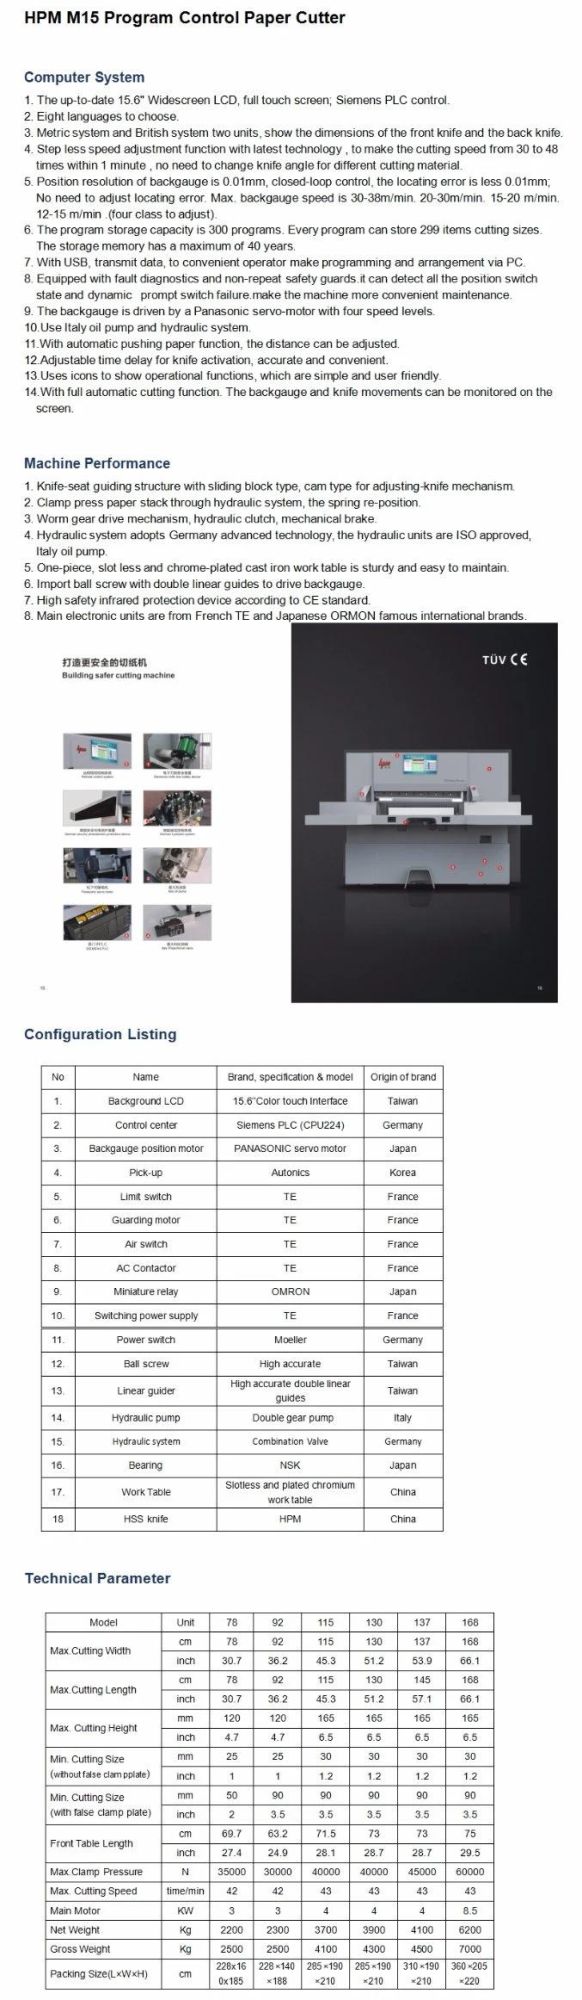 Program Control Paper Cutter of Printing Machine (HPM168M15)